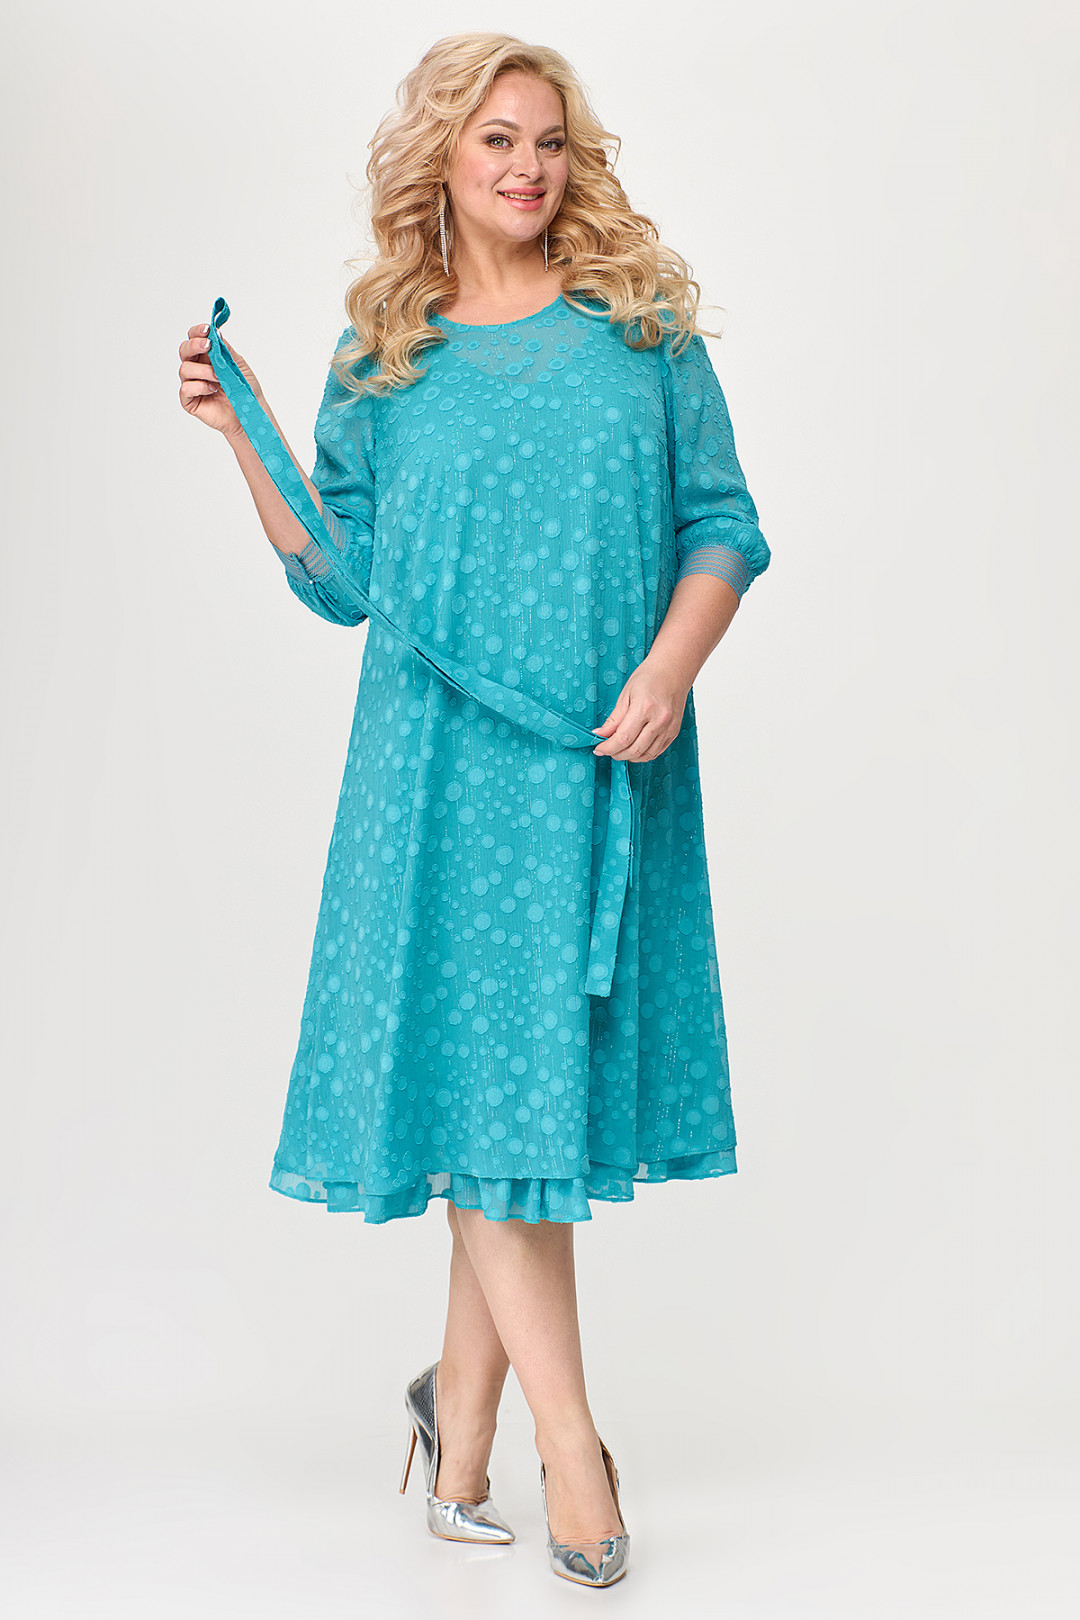 Платье ALGRANDA (Новелла Шарм) A3814-2-6